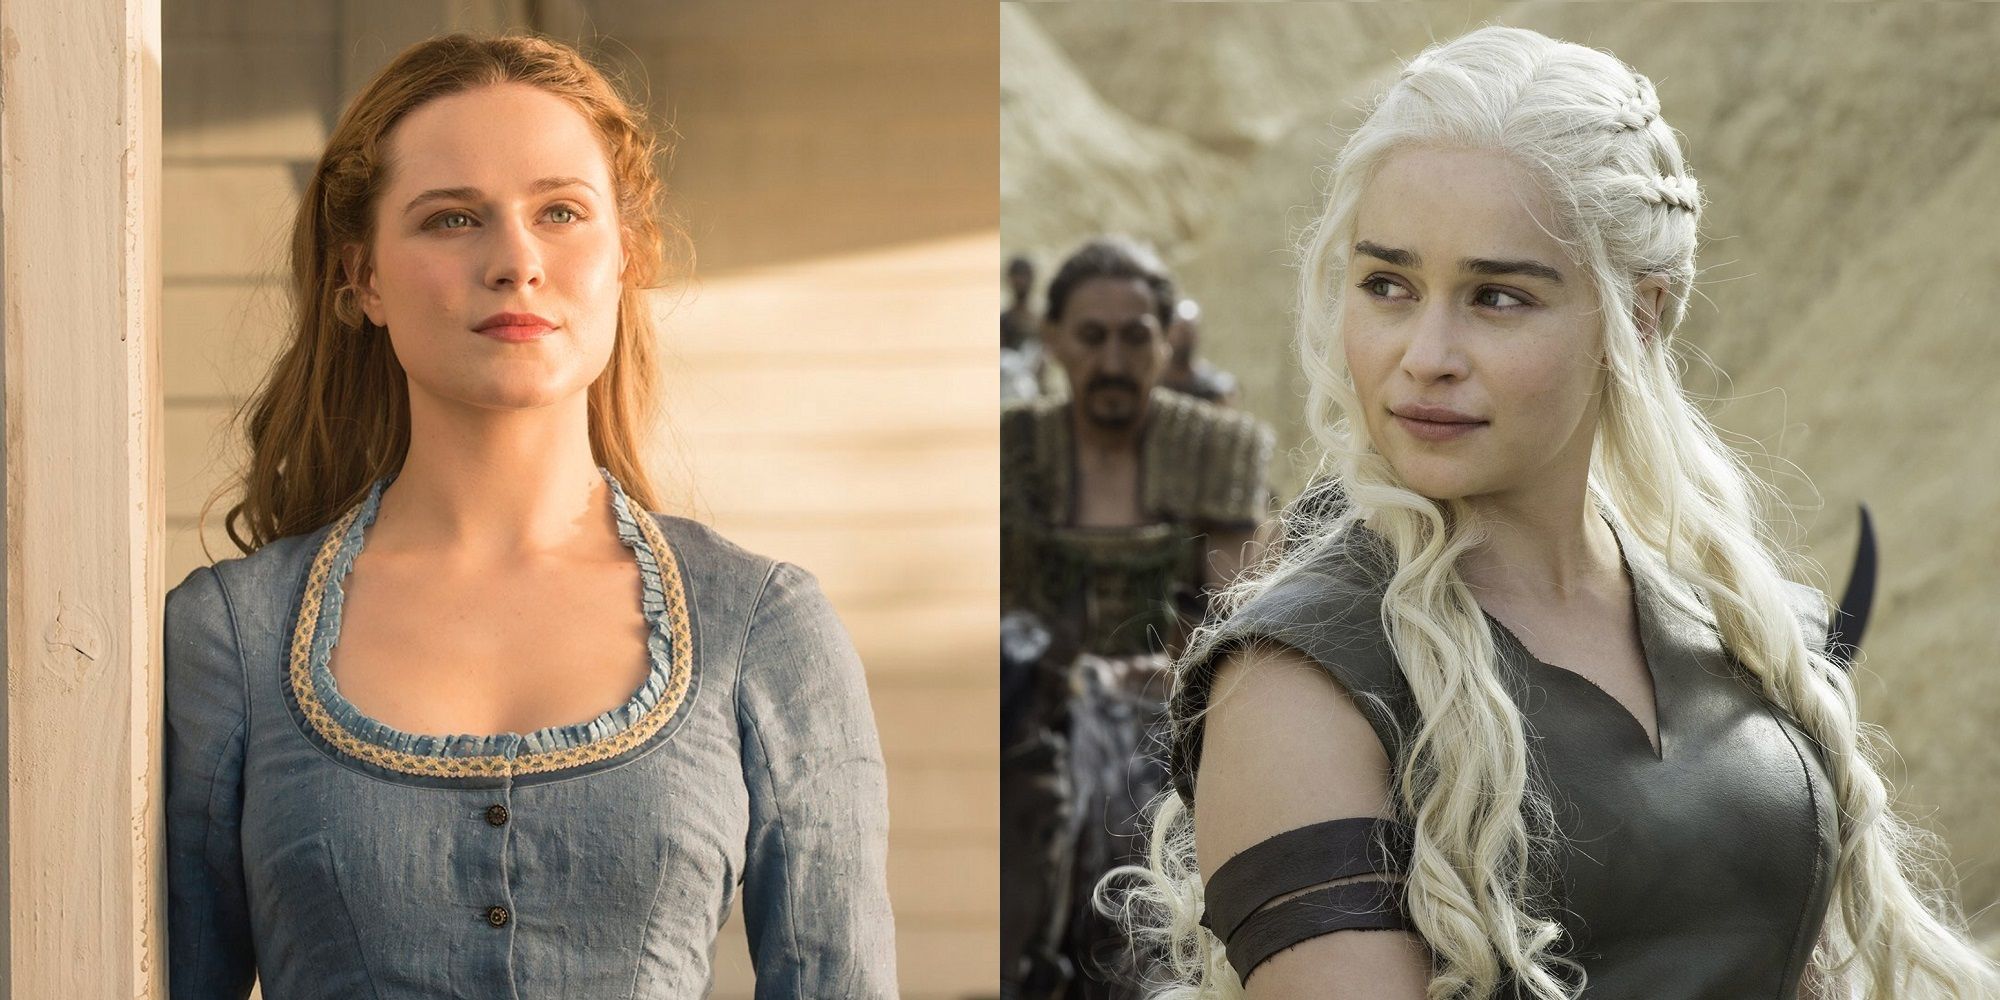 Evan Rachel Wood as Dolores in Westworld and Emilia Clarke as Daenerys Targaryen in Game of Thrones